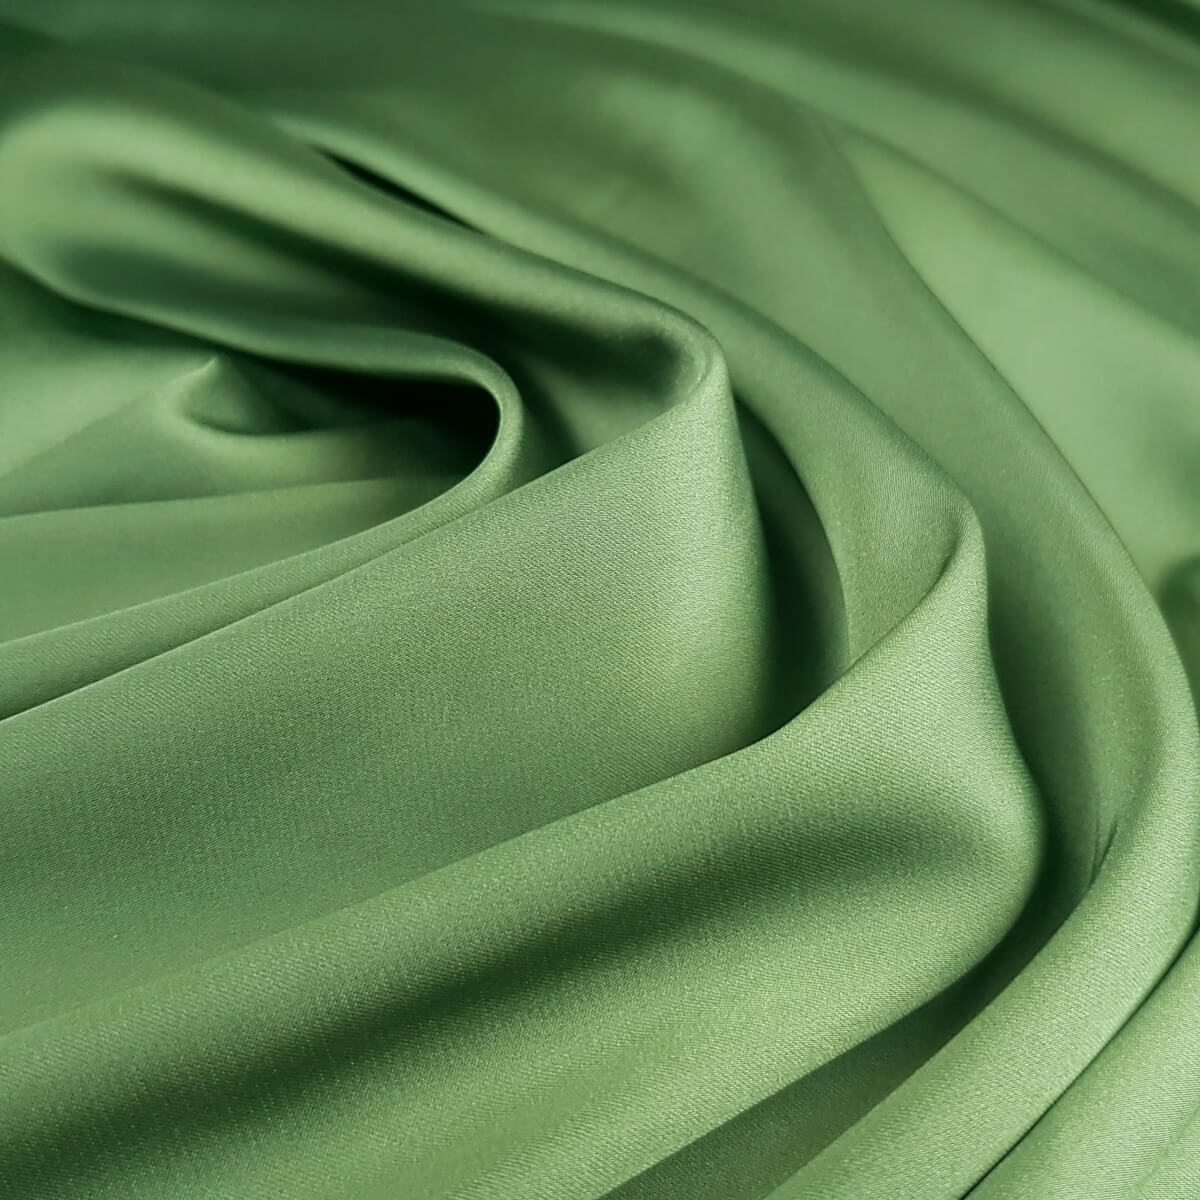 satyna trawiasta zielen elastyczna kryjaca poliesterB